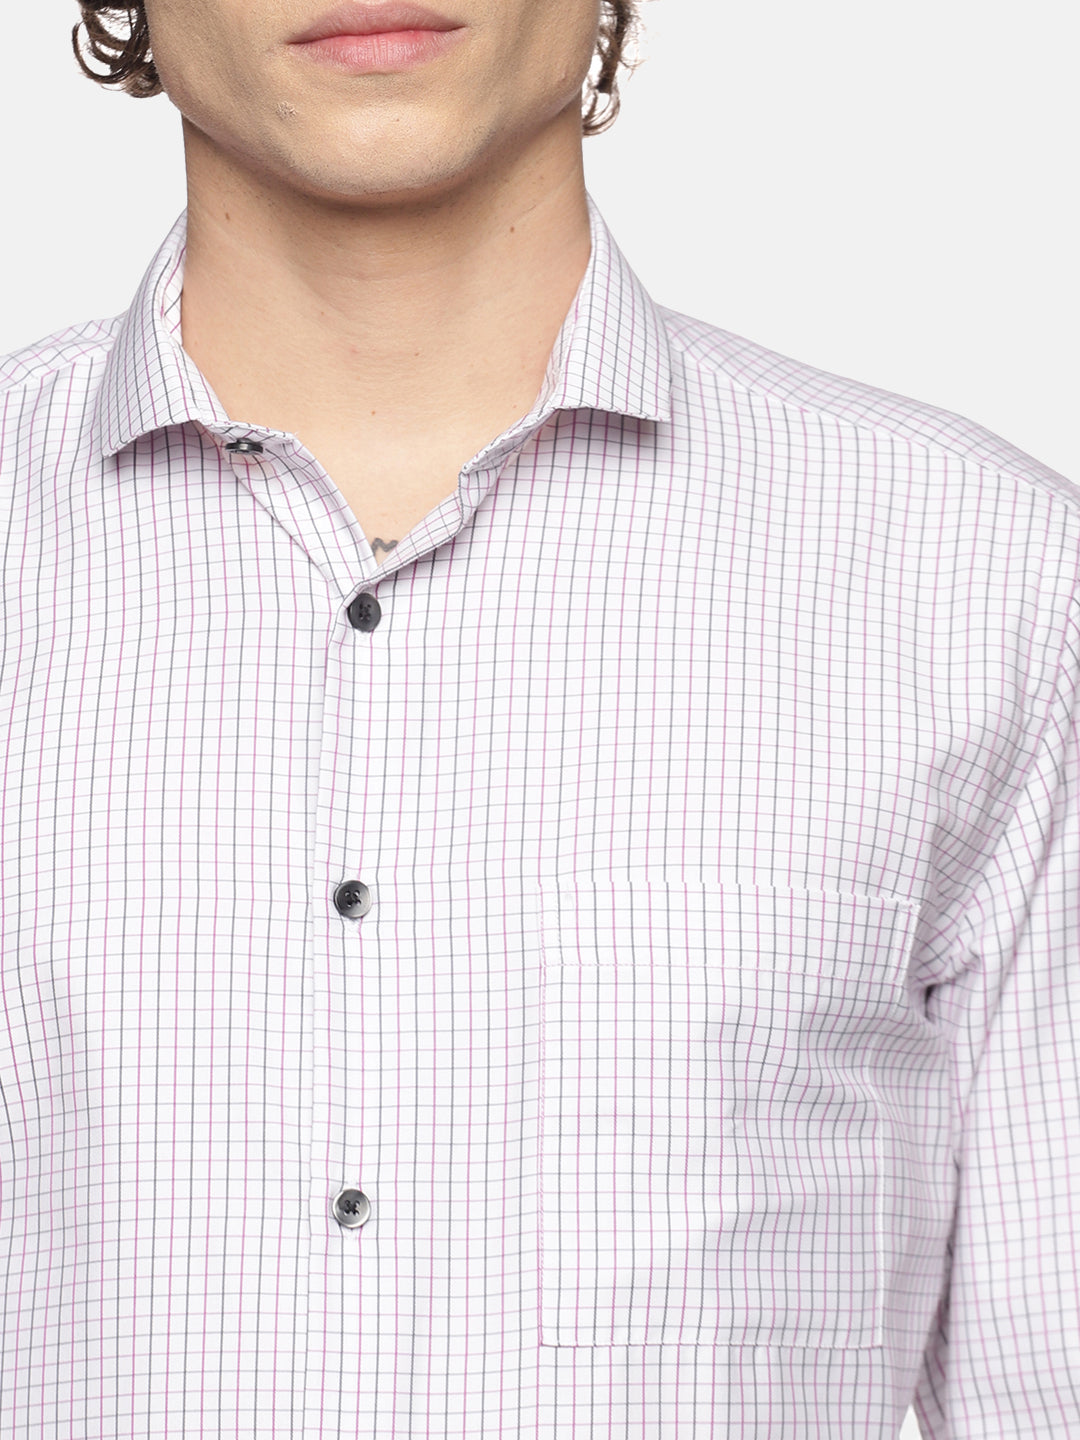 Men White Checkered Slim Fit Full Sleeve Cotton Formal Shirt